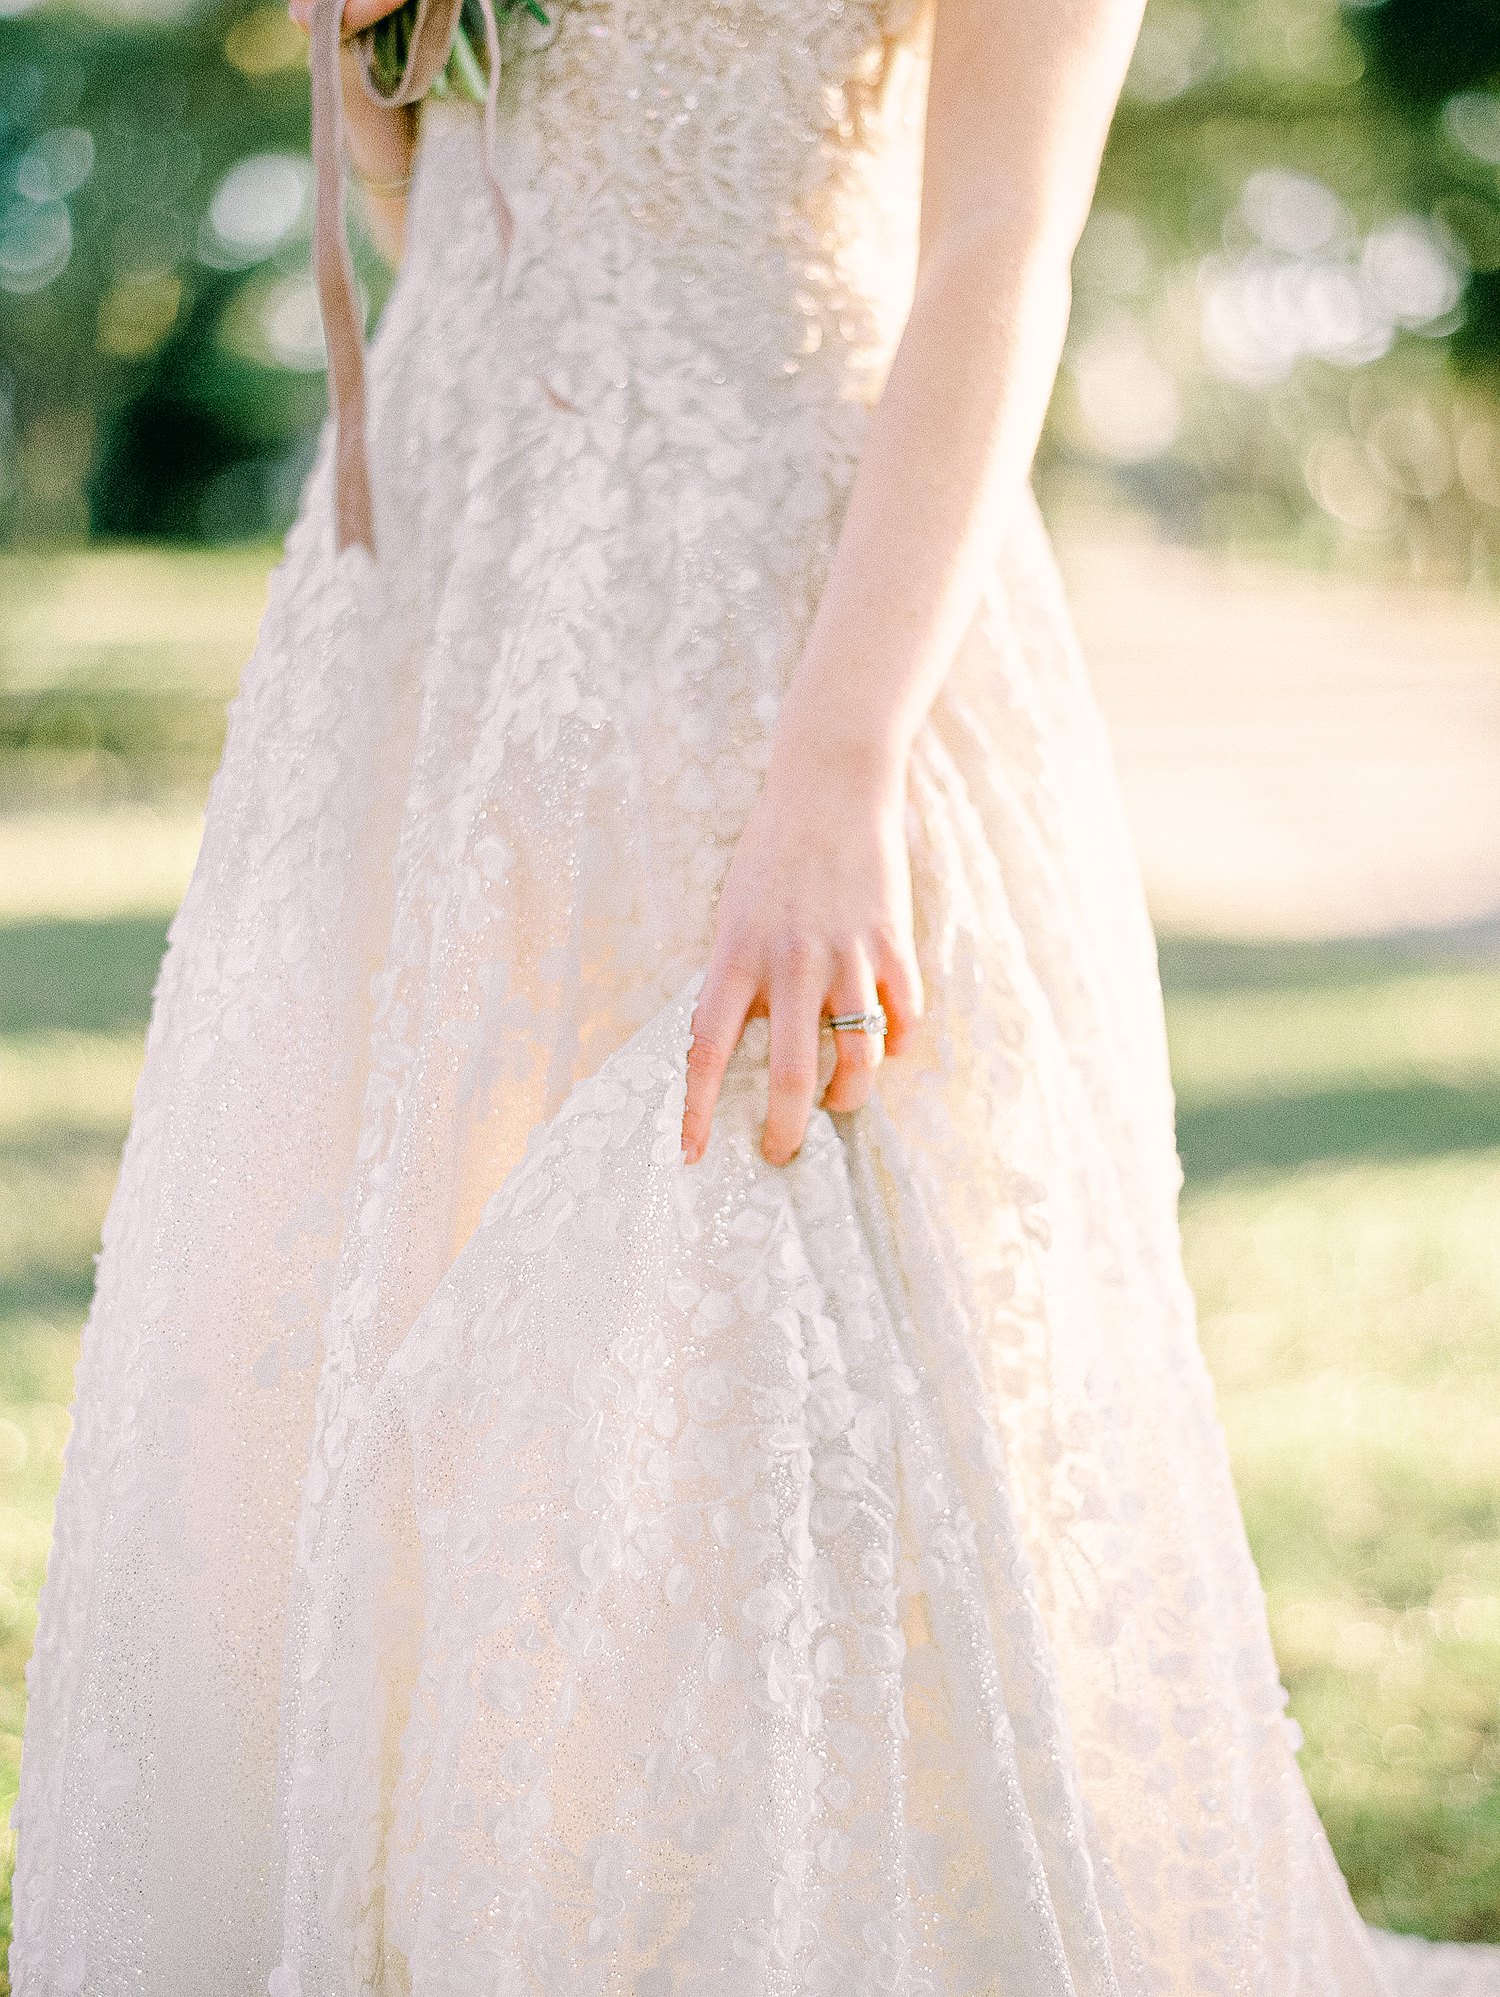 Bride's hand on white wedding dress skirt outdoors